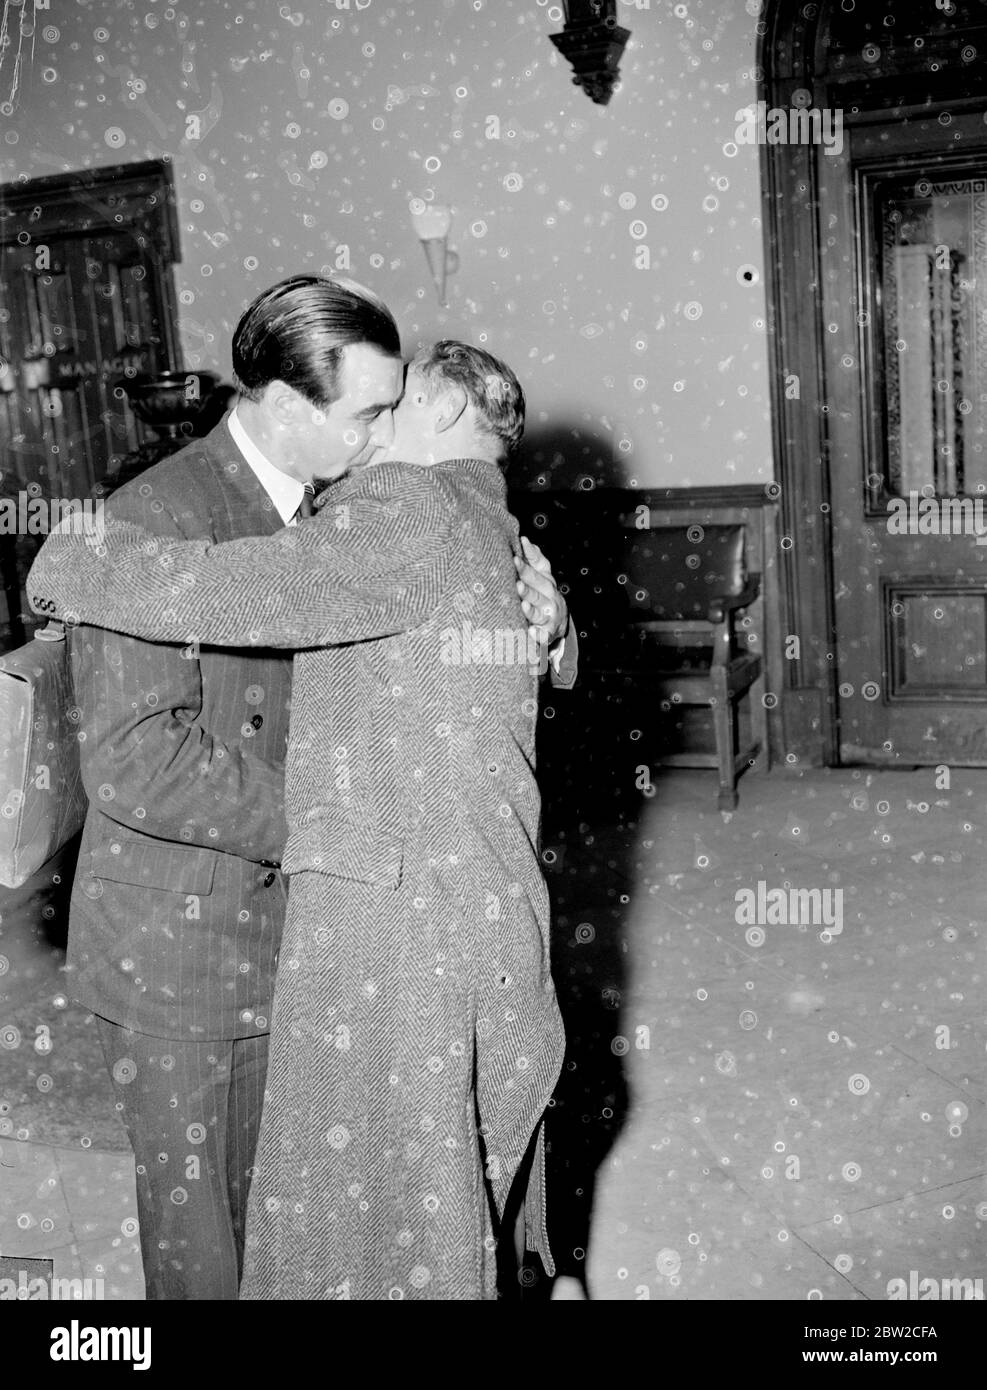 Les réfugiés de l'Armée rouge embrassent. Trois hommes de l'Armée rouge, deux officiers et un caporal ont parlé ce soir des conditions de service dans l'Armée rouge à un rassemblement au Caxton Hall, à Londres, organisé par le mouvement russe libre britannique. Ils se sont tous échappés de derrière le rideau de fer au cours des 12 derniers mois. Le Caporal Andrei Novzhitsky (23) s'est envolé à Londres ce soir de Berlin. Il était auparavant membre d'un régiment de gardes soviétiques. Le Brigadier R. C. Fireebrace, ancien Attaché militaire britannique à Moscou, a présidé la réunion. La photo montre deux des anciens hommes de l'Armée rouge embrassent la rencontre au Caxton Hall tonigh Banque D'Images